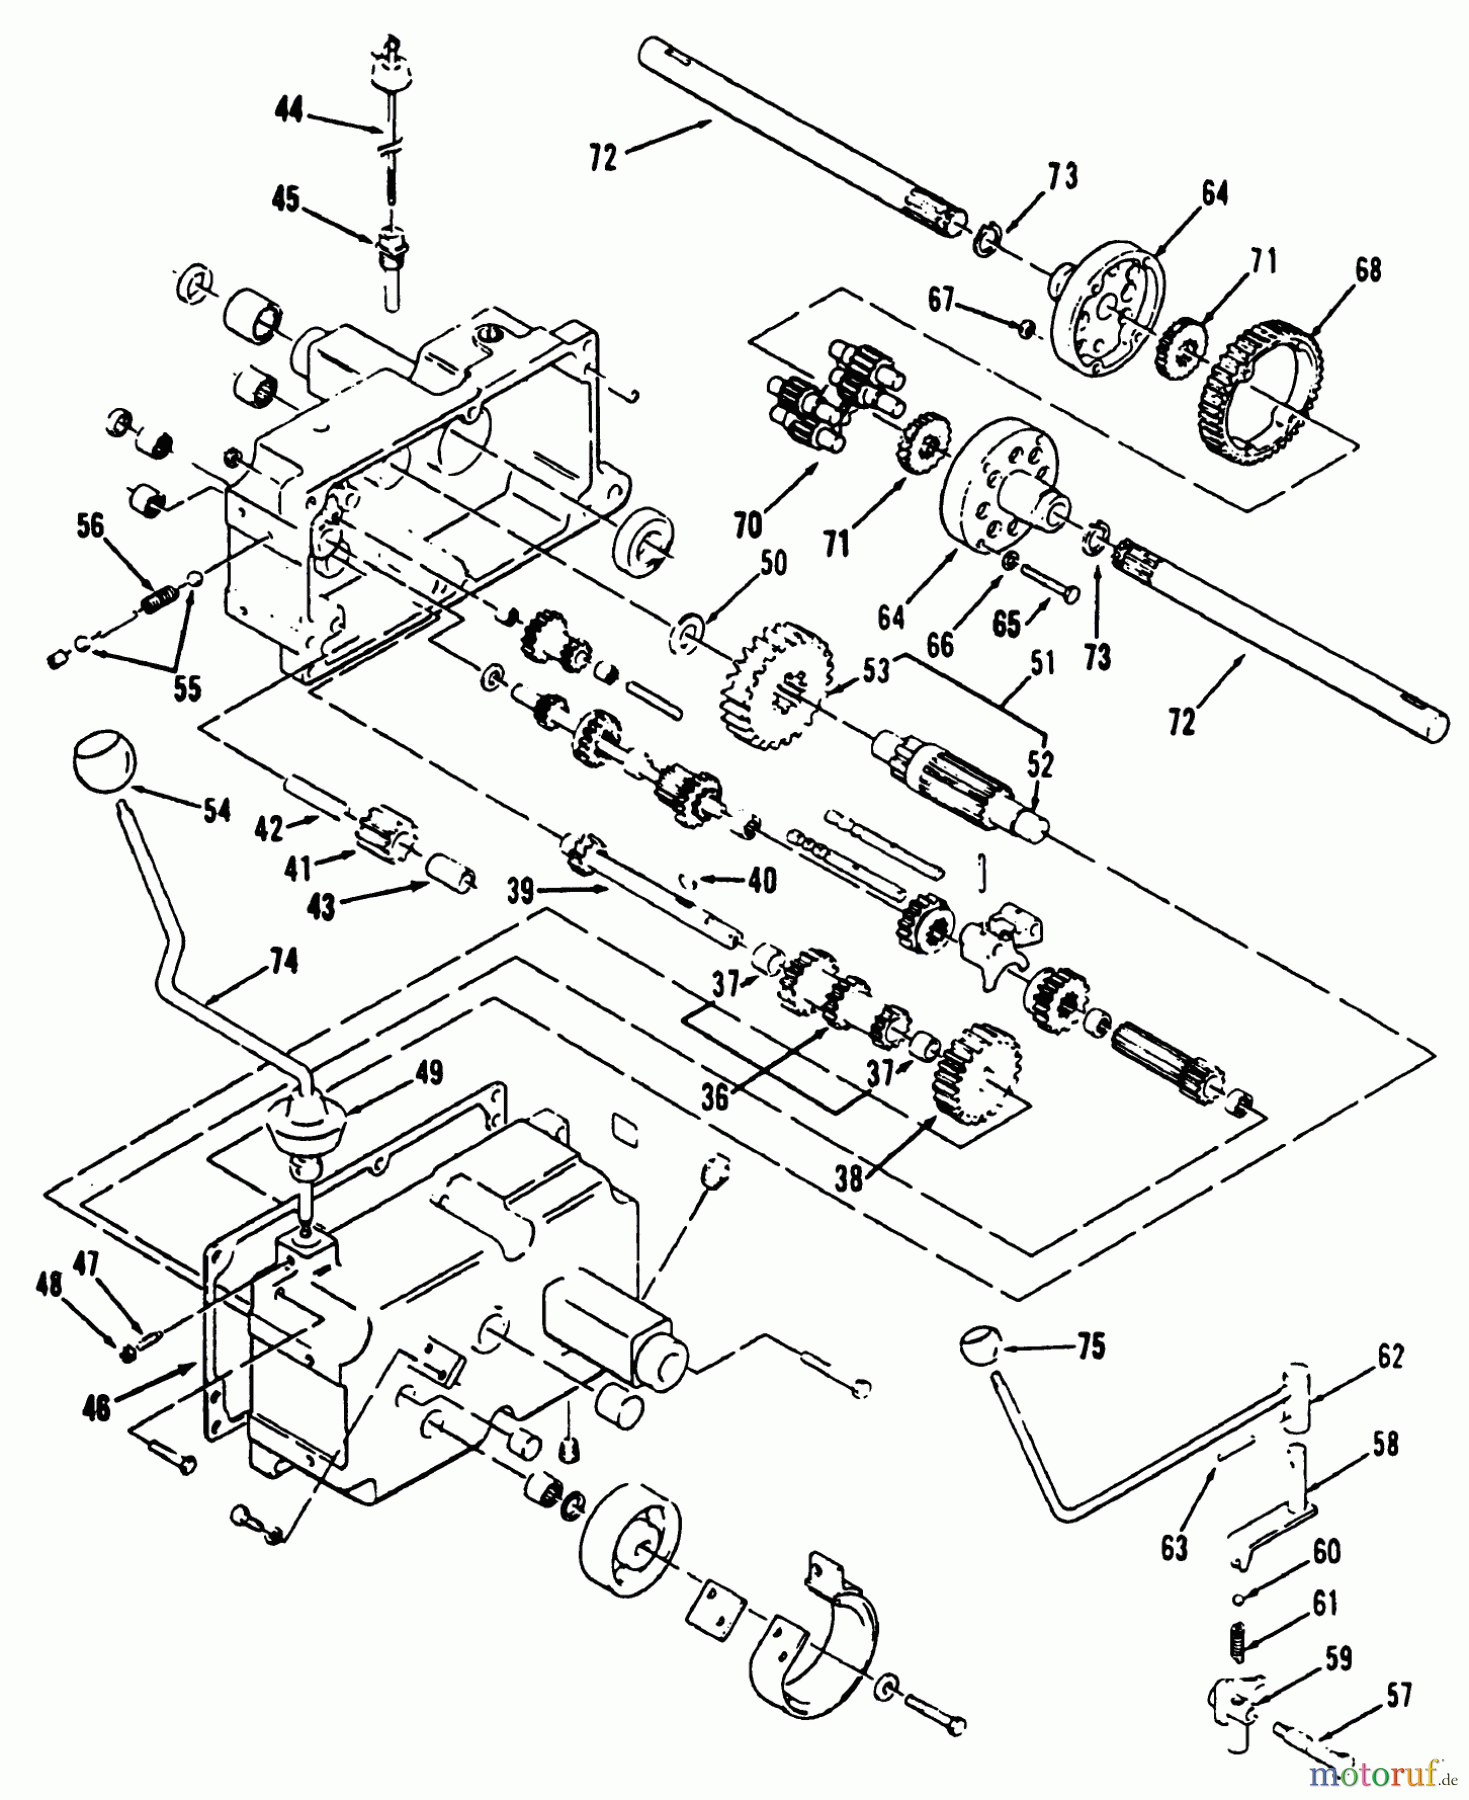  Toro Neu Mowers, Lawn & Garden Tractor Seite 1 31-10K803 (310-8) - Toro 310-8 Garden Tractor, 1992 (2000001-2999999) MECHANICAL TRANSMISSION 8-SPEED #2